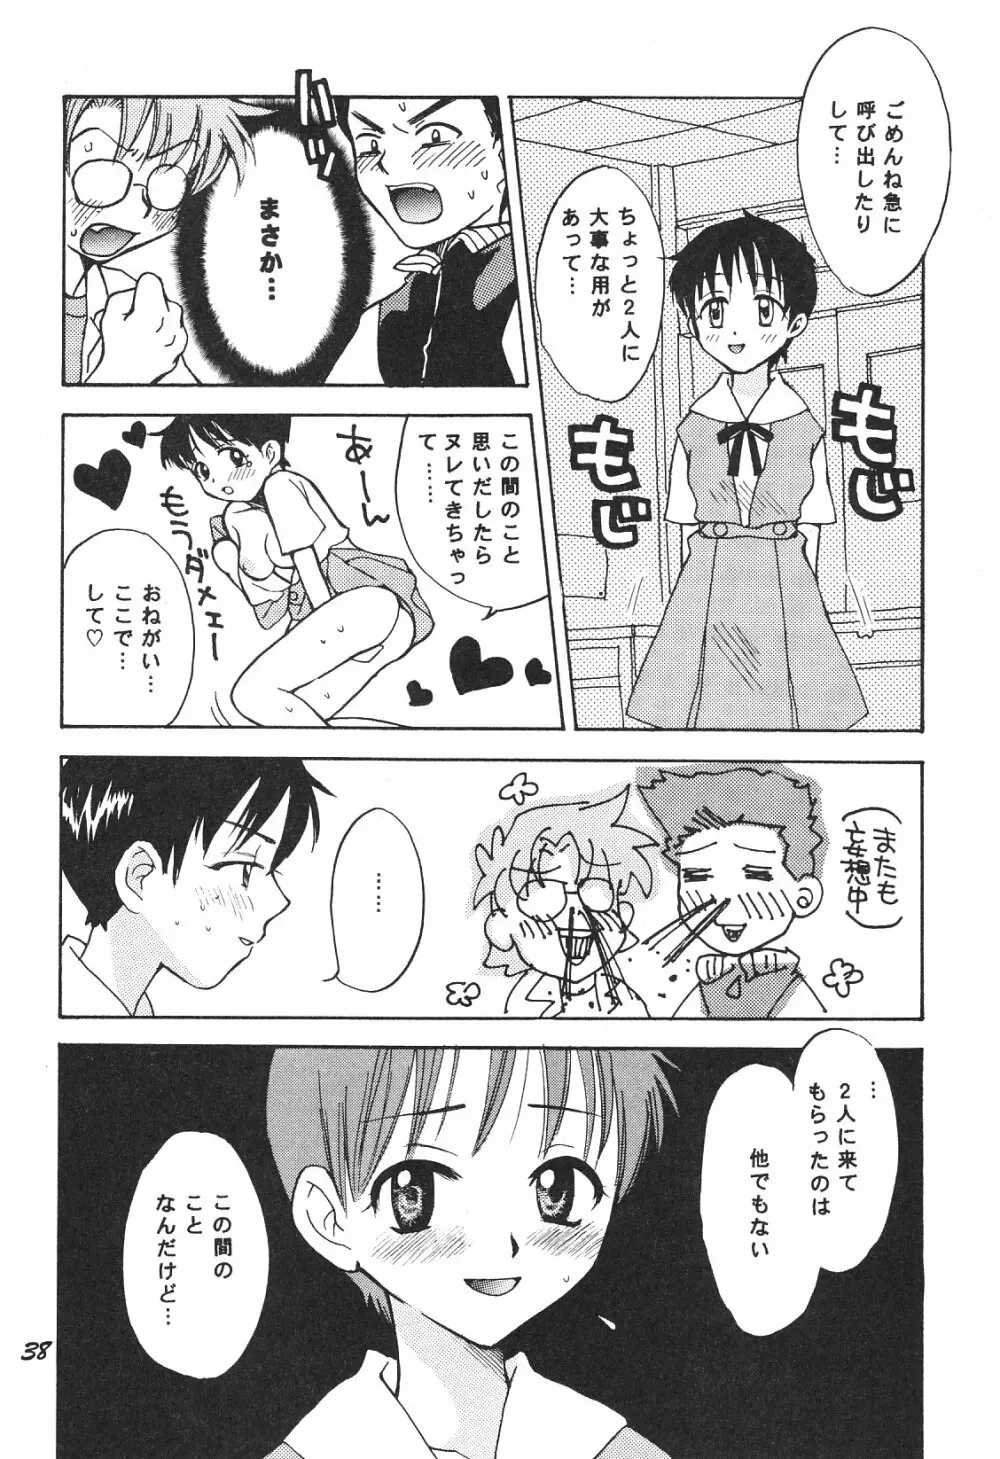 Maniac Juice 女シンジ再録集 '96-'99 - page38